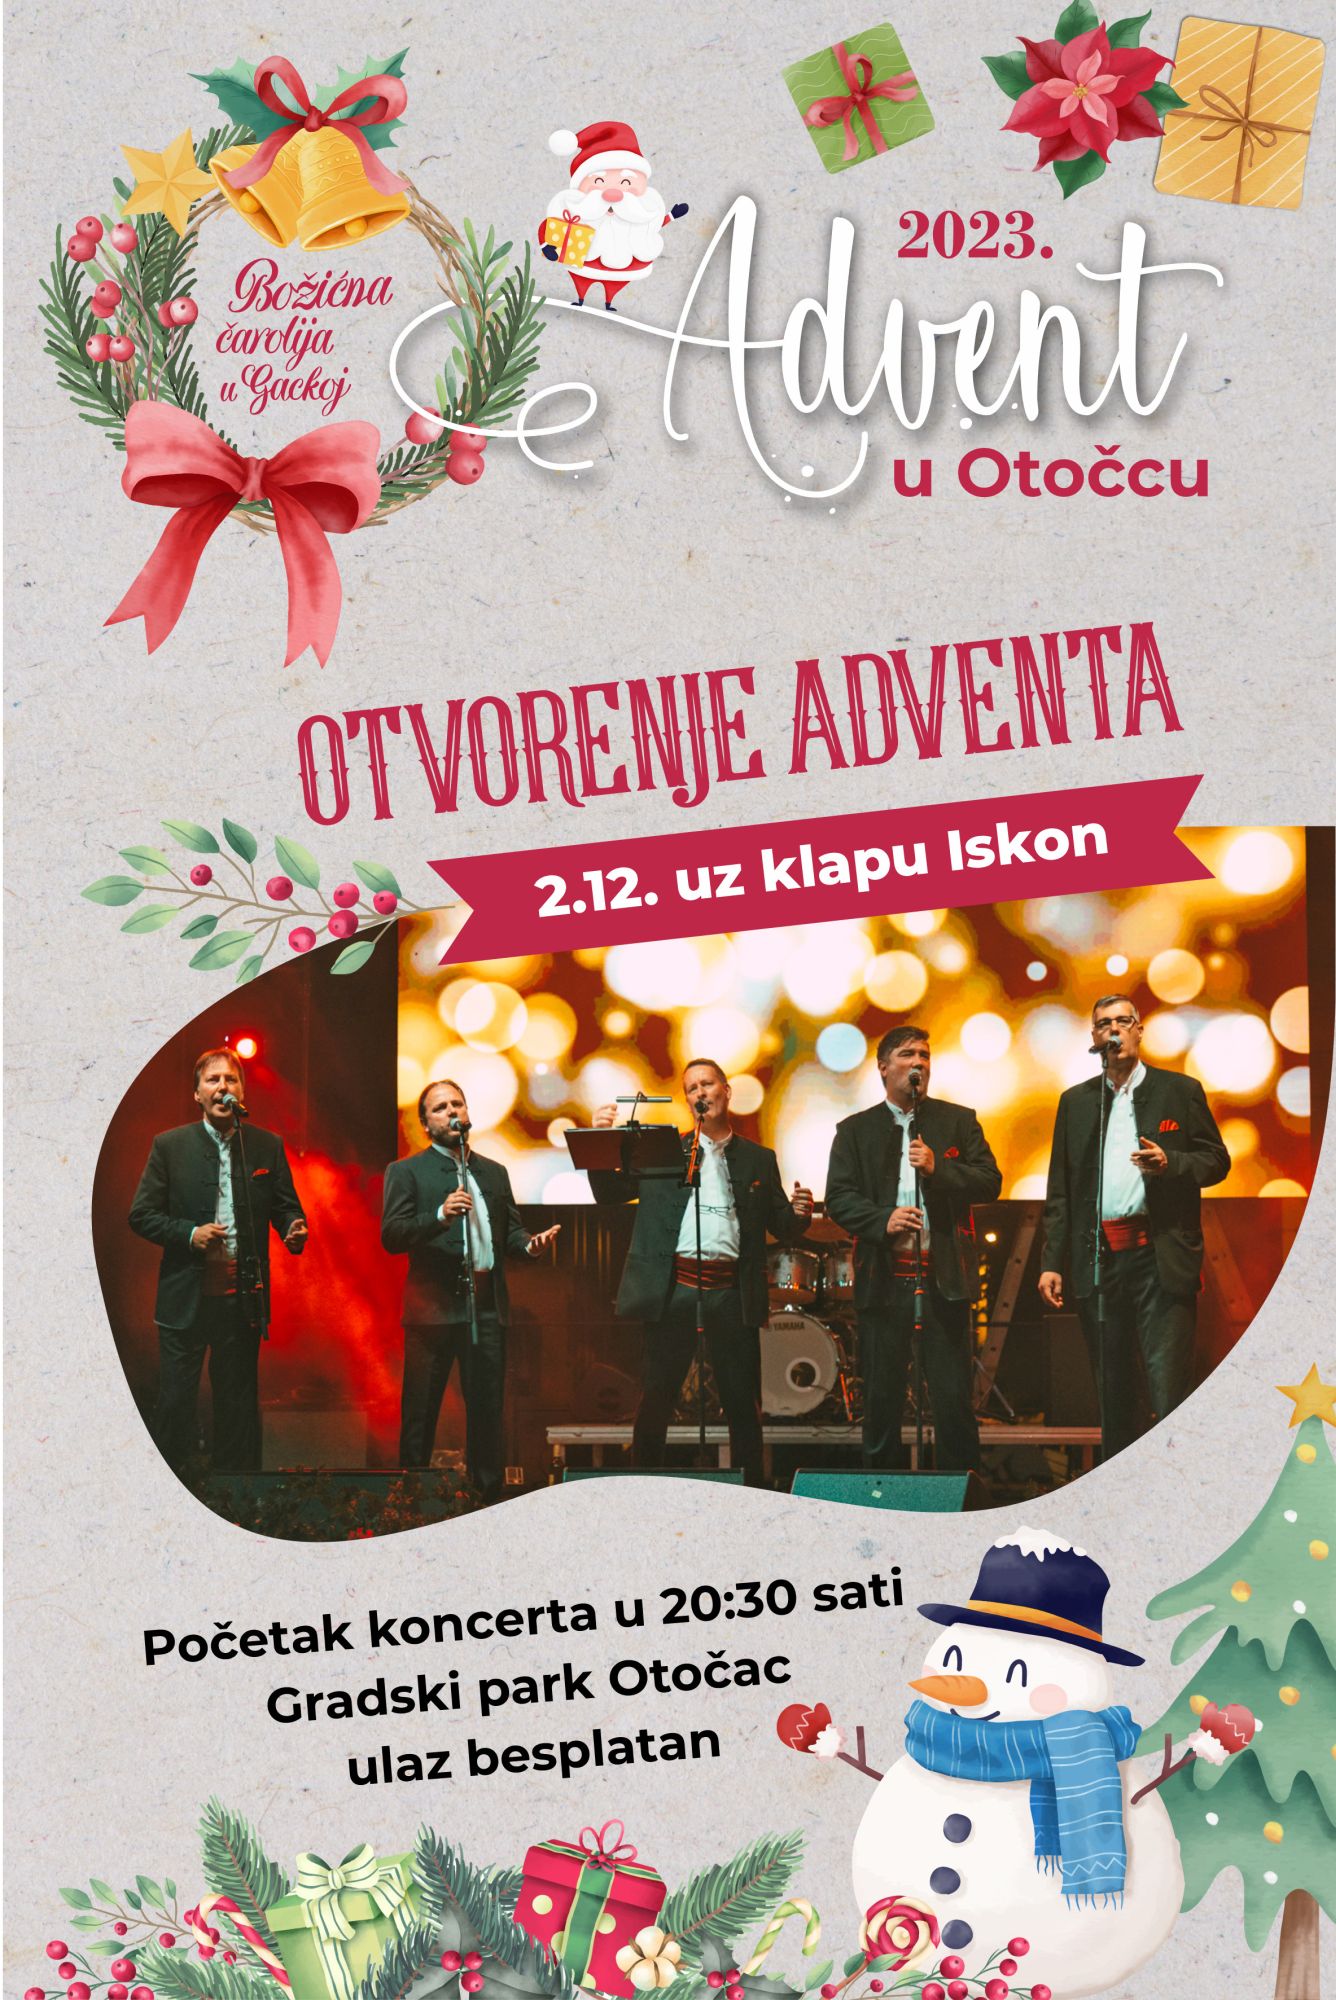 Klapa Iskon 2. prosinca svojim će koncertom otvoriti Advent u Otočcu